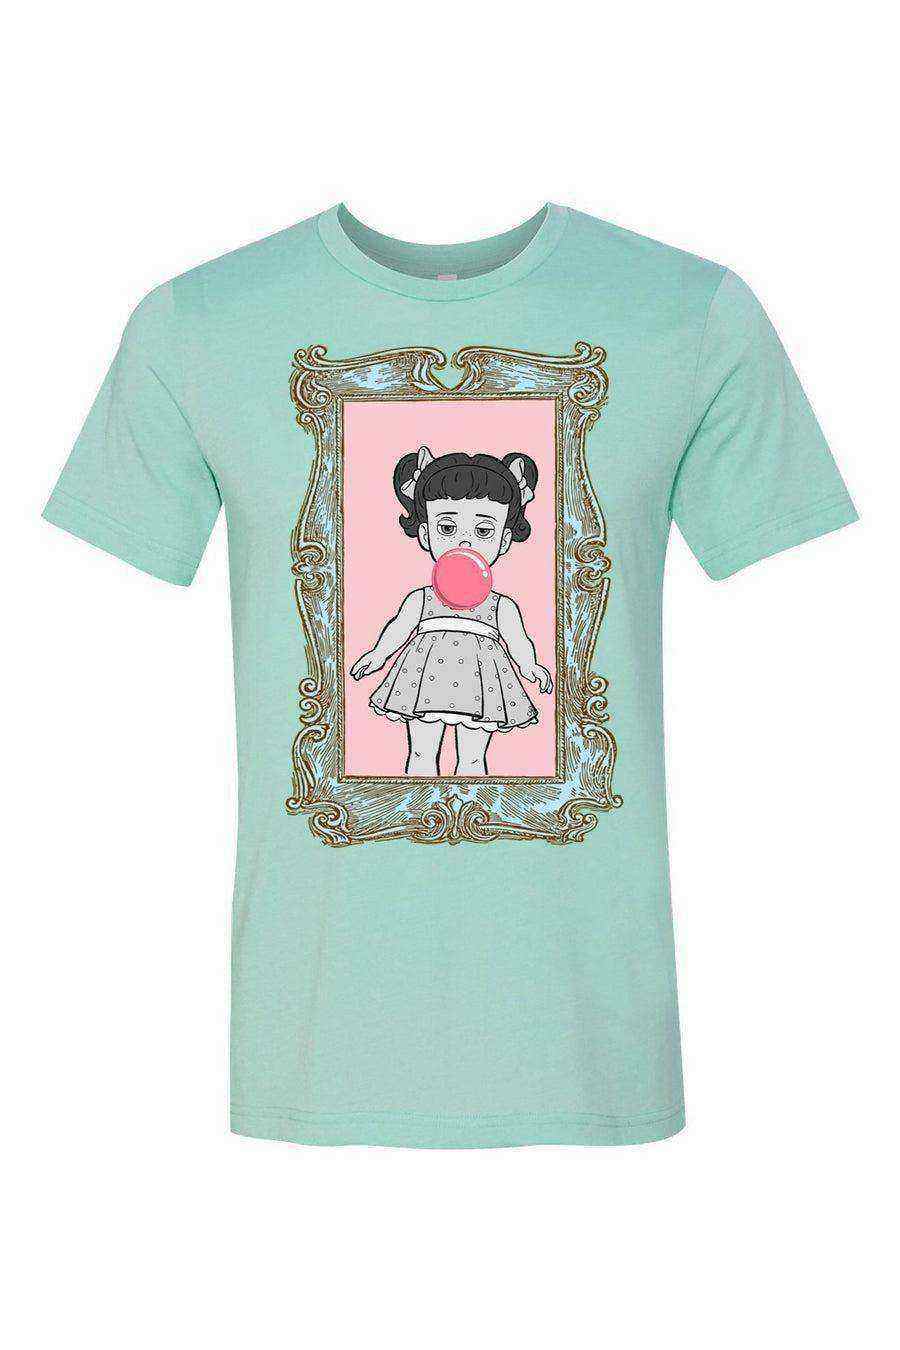 Womens | Gabby Gabby Bubblegum Pop Art Shirt | Gabby Gabby Shirts - Dylan's Tees